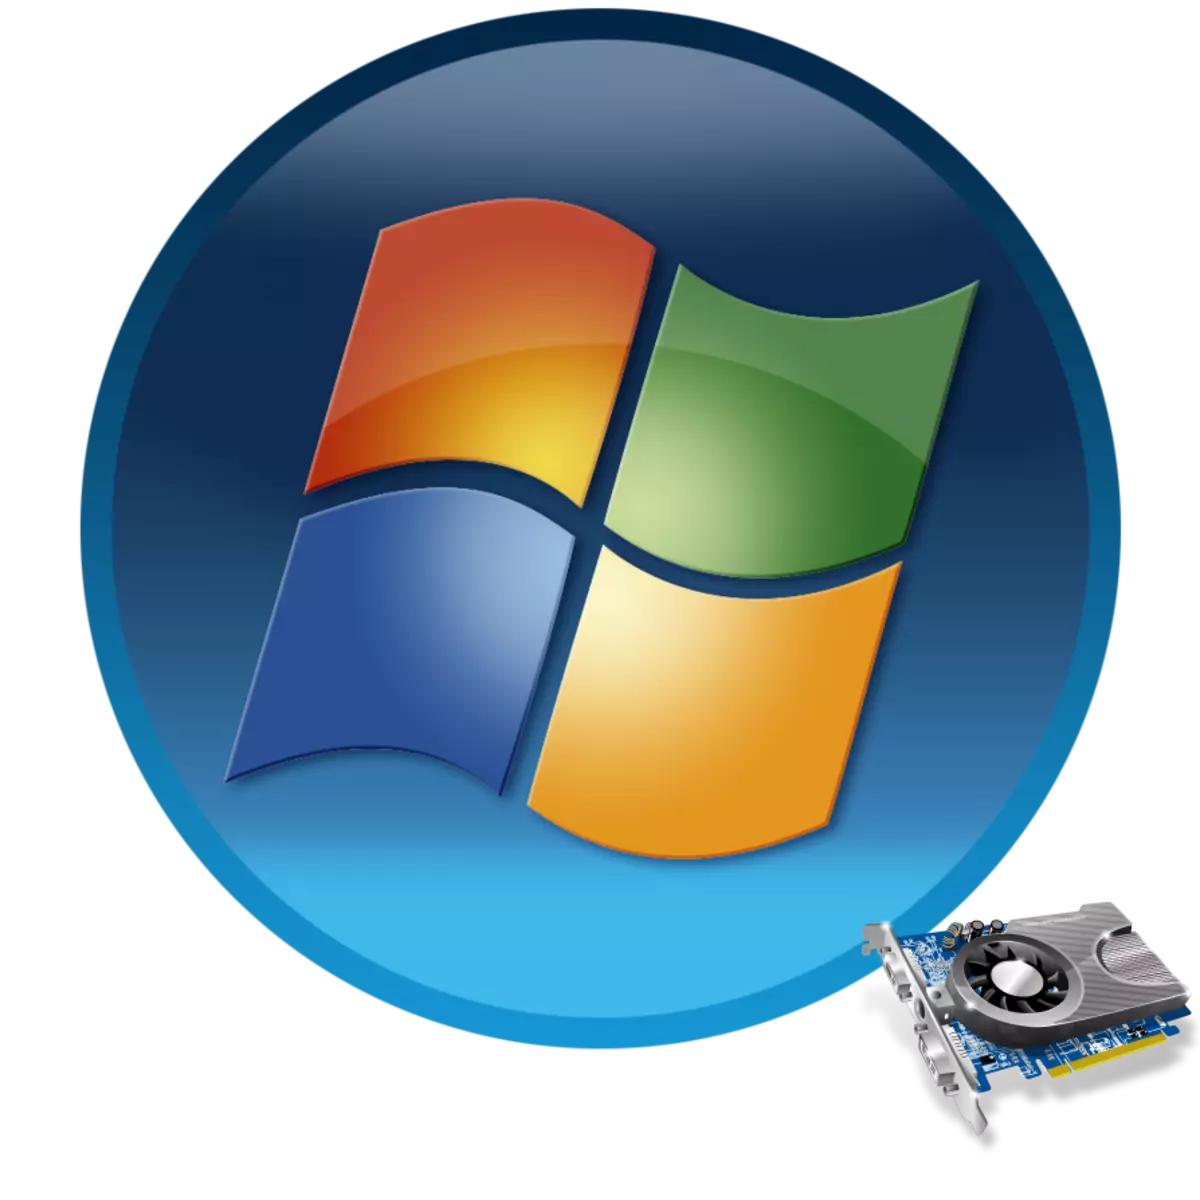 Aktualisieren von Grafiktreibern in Windows 7